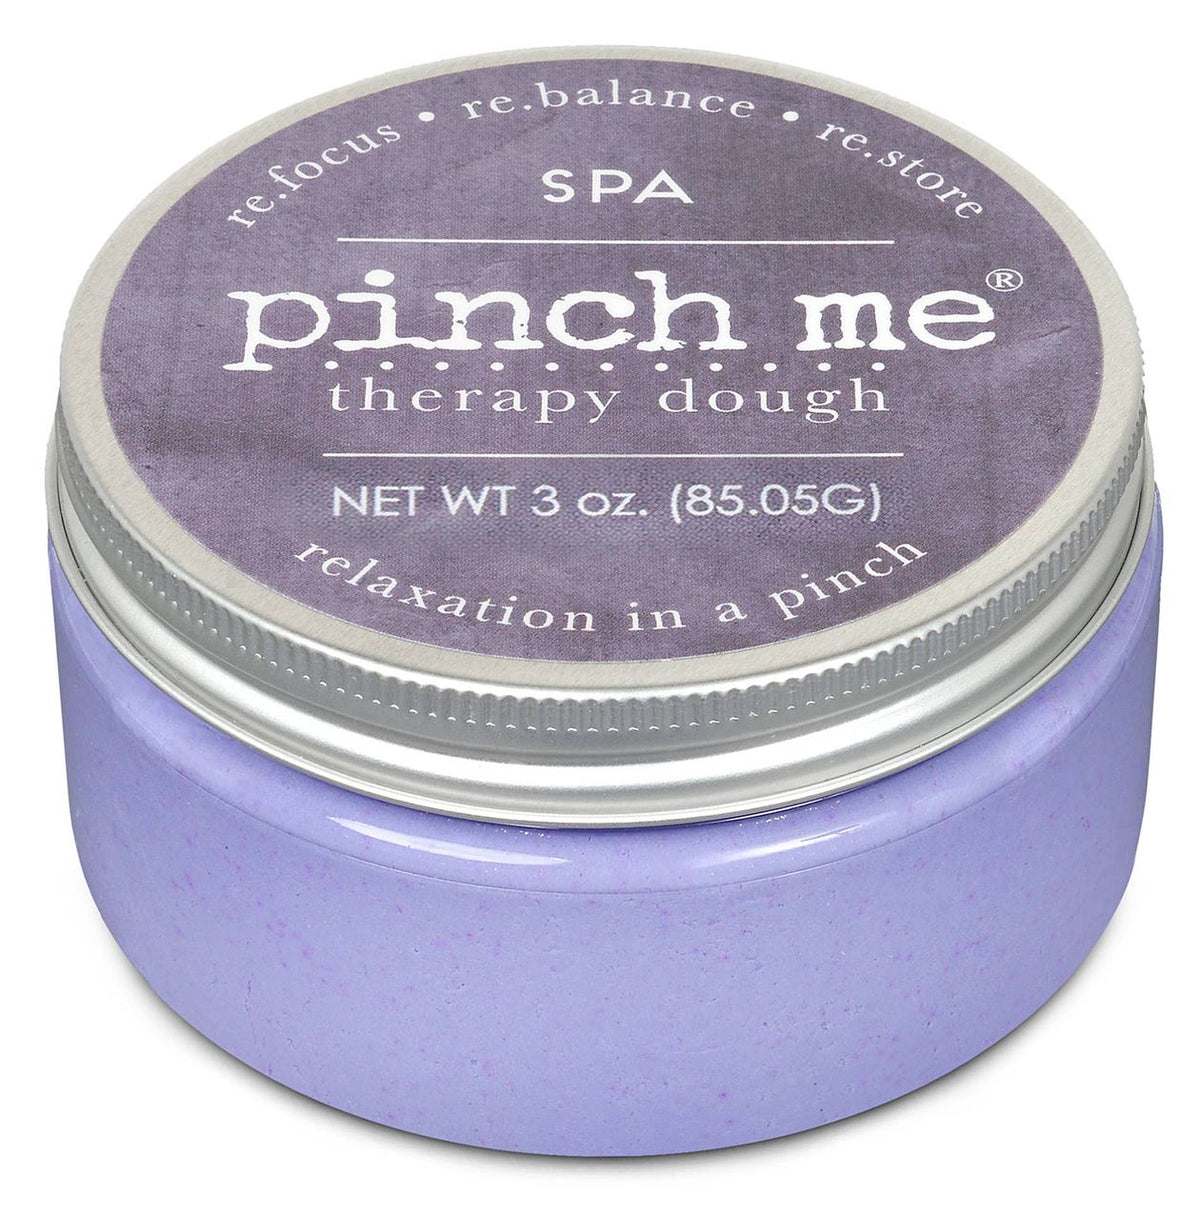 Pinch Me Therapy Dough - Spa